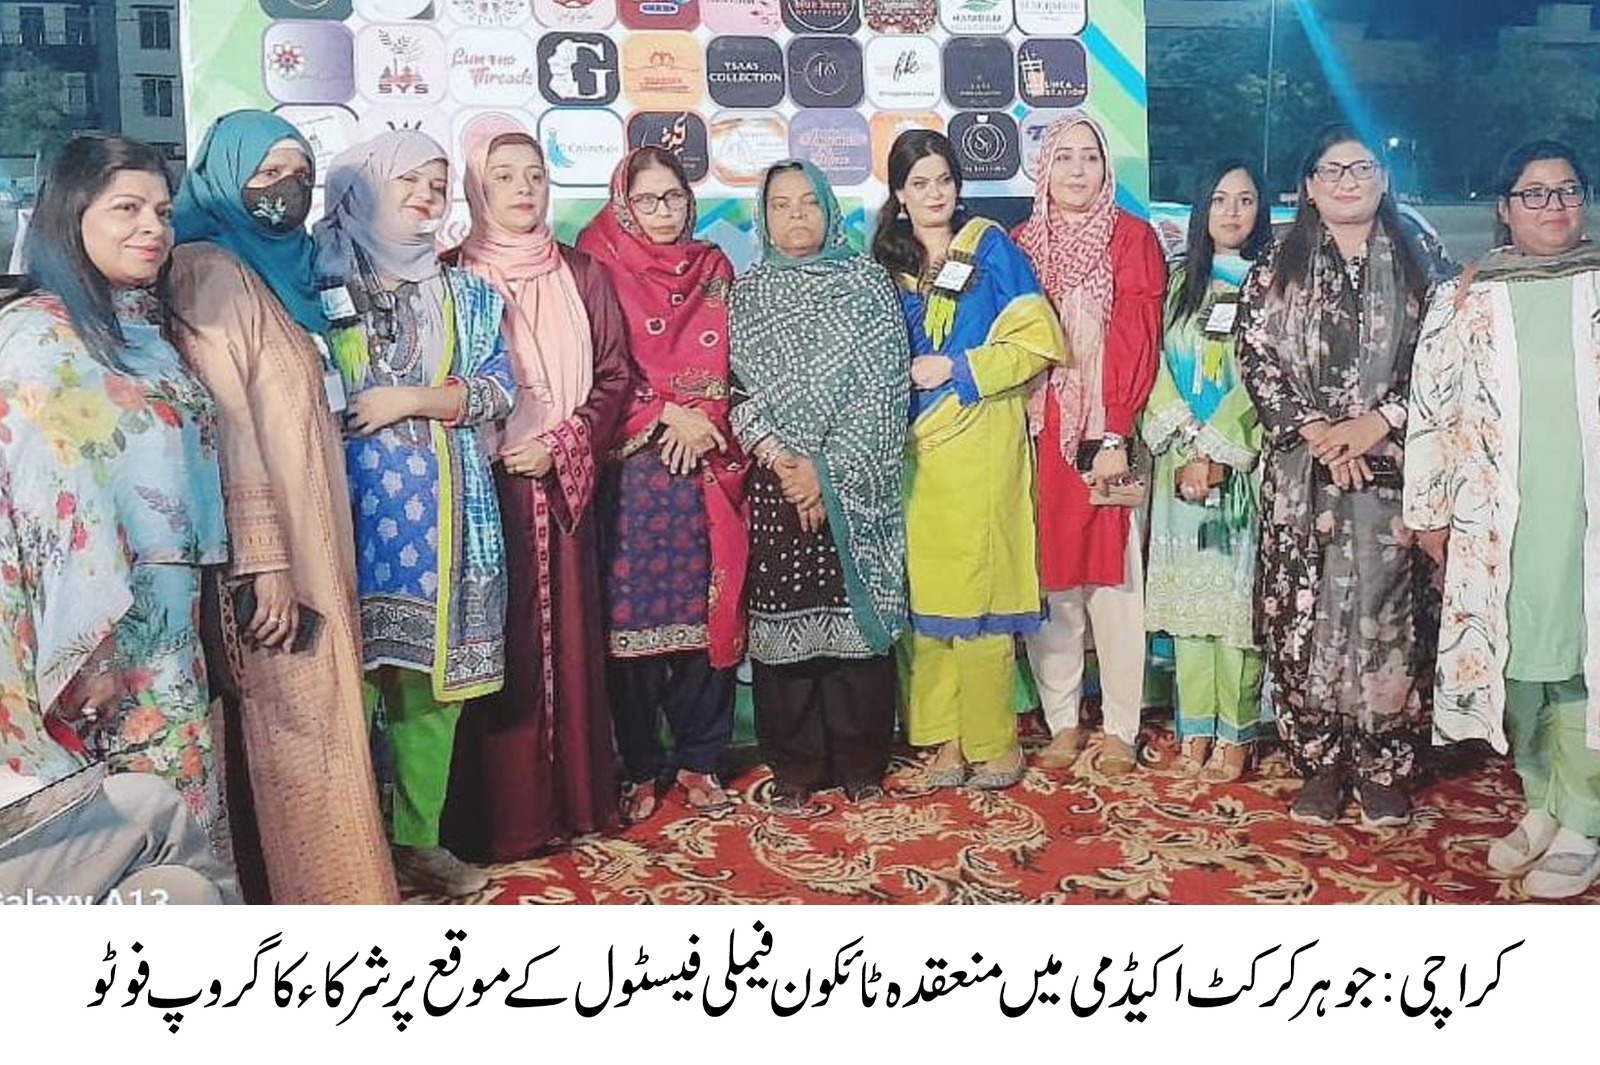 خواتین کے عالمی دن کے حوالے سے کراچی میں جوہر کرکٹ اکیڈمی میں ٹائکون فیملی فیسٹول کا انعقاد